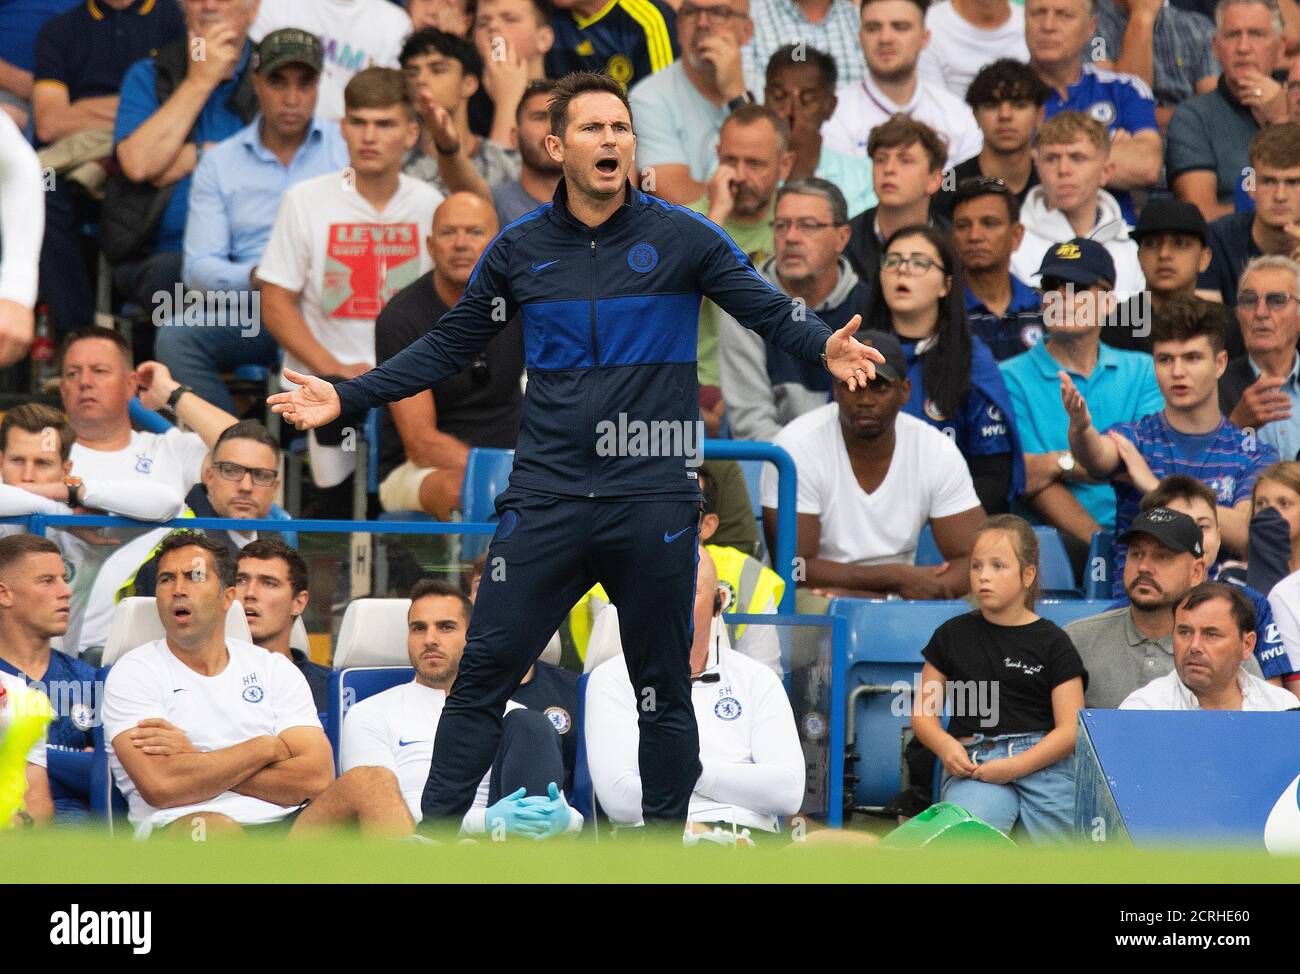 Frank Lampard - responsable de Chelsea. Chelsea et Sheffield Utd. Première ligue. CRÉDIT PHOTO : © MARK PAIN / IMAGE DE STOCK D'ALAMY Banque D'Images